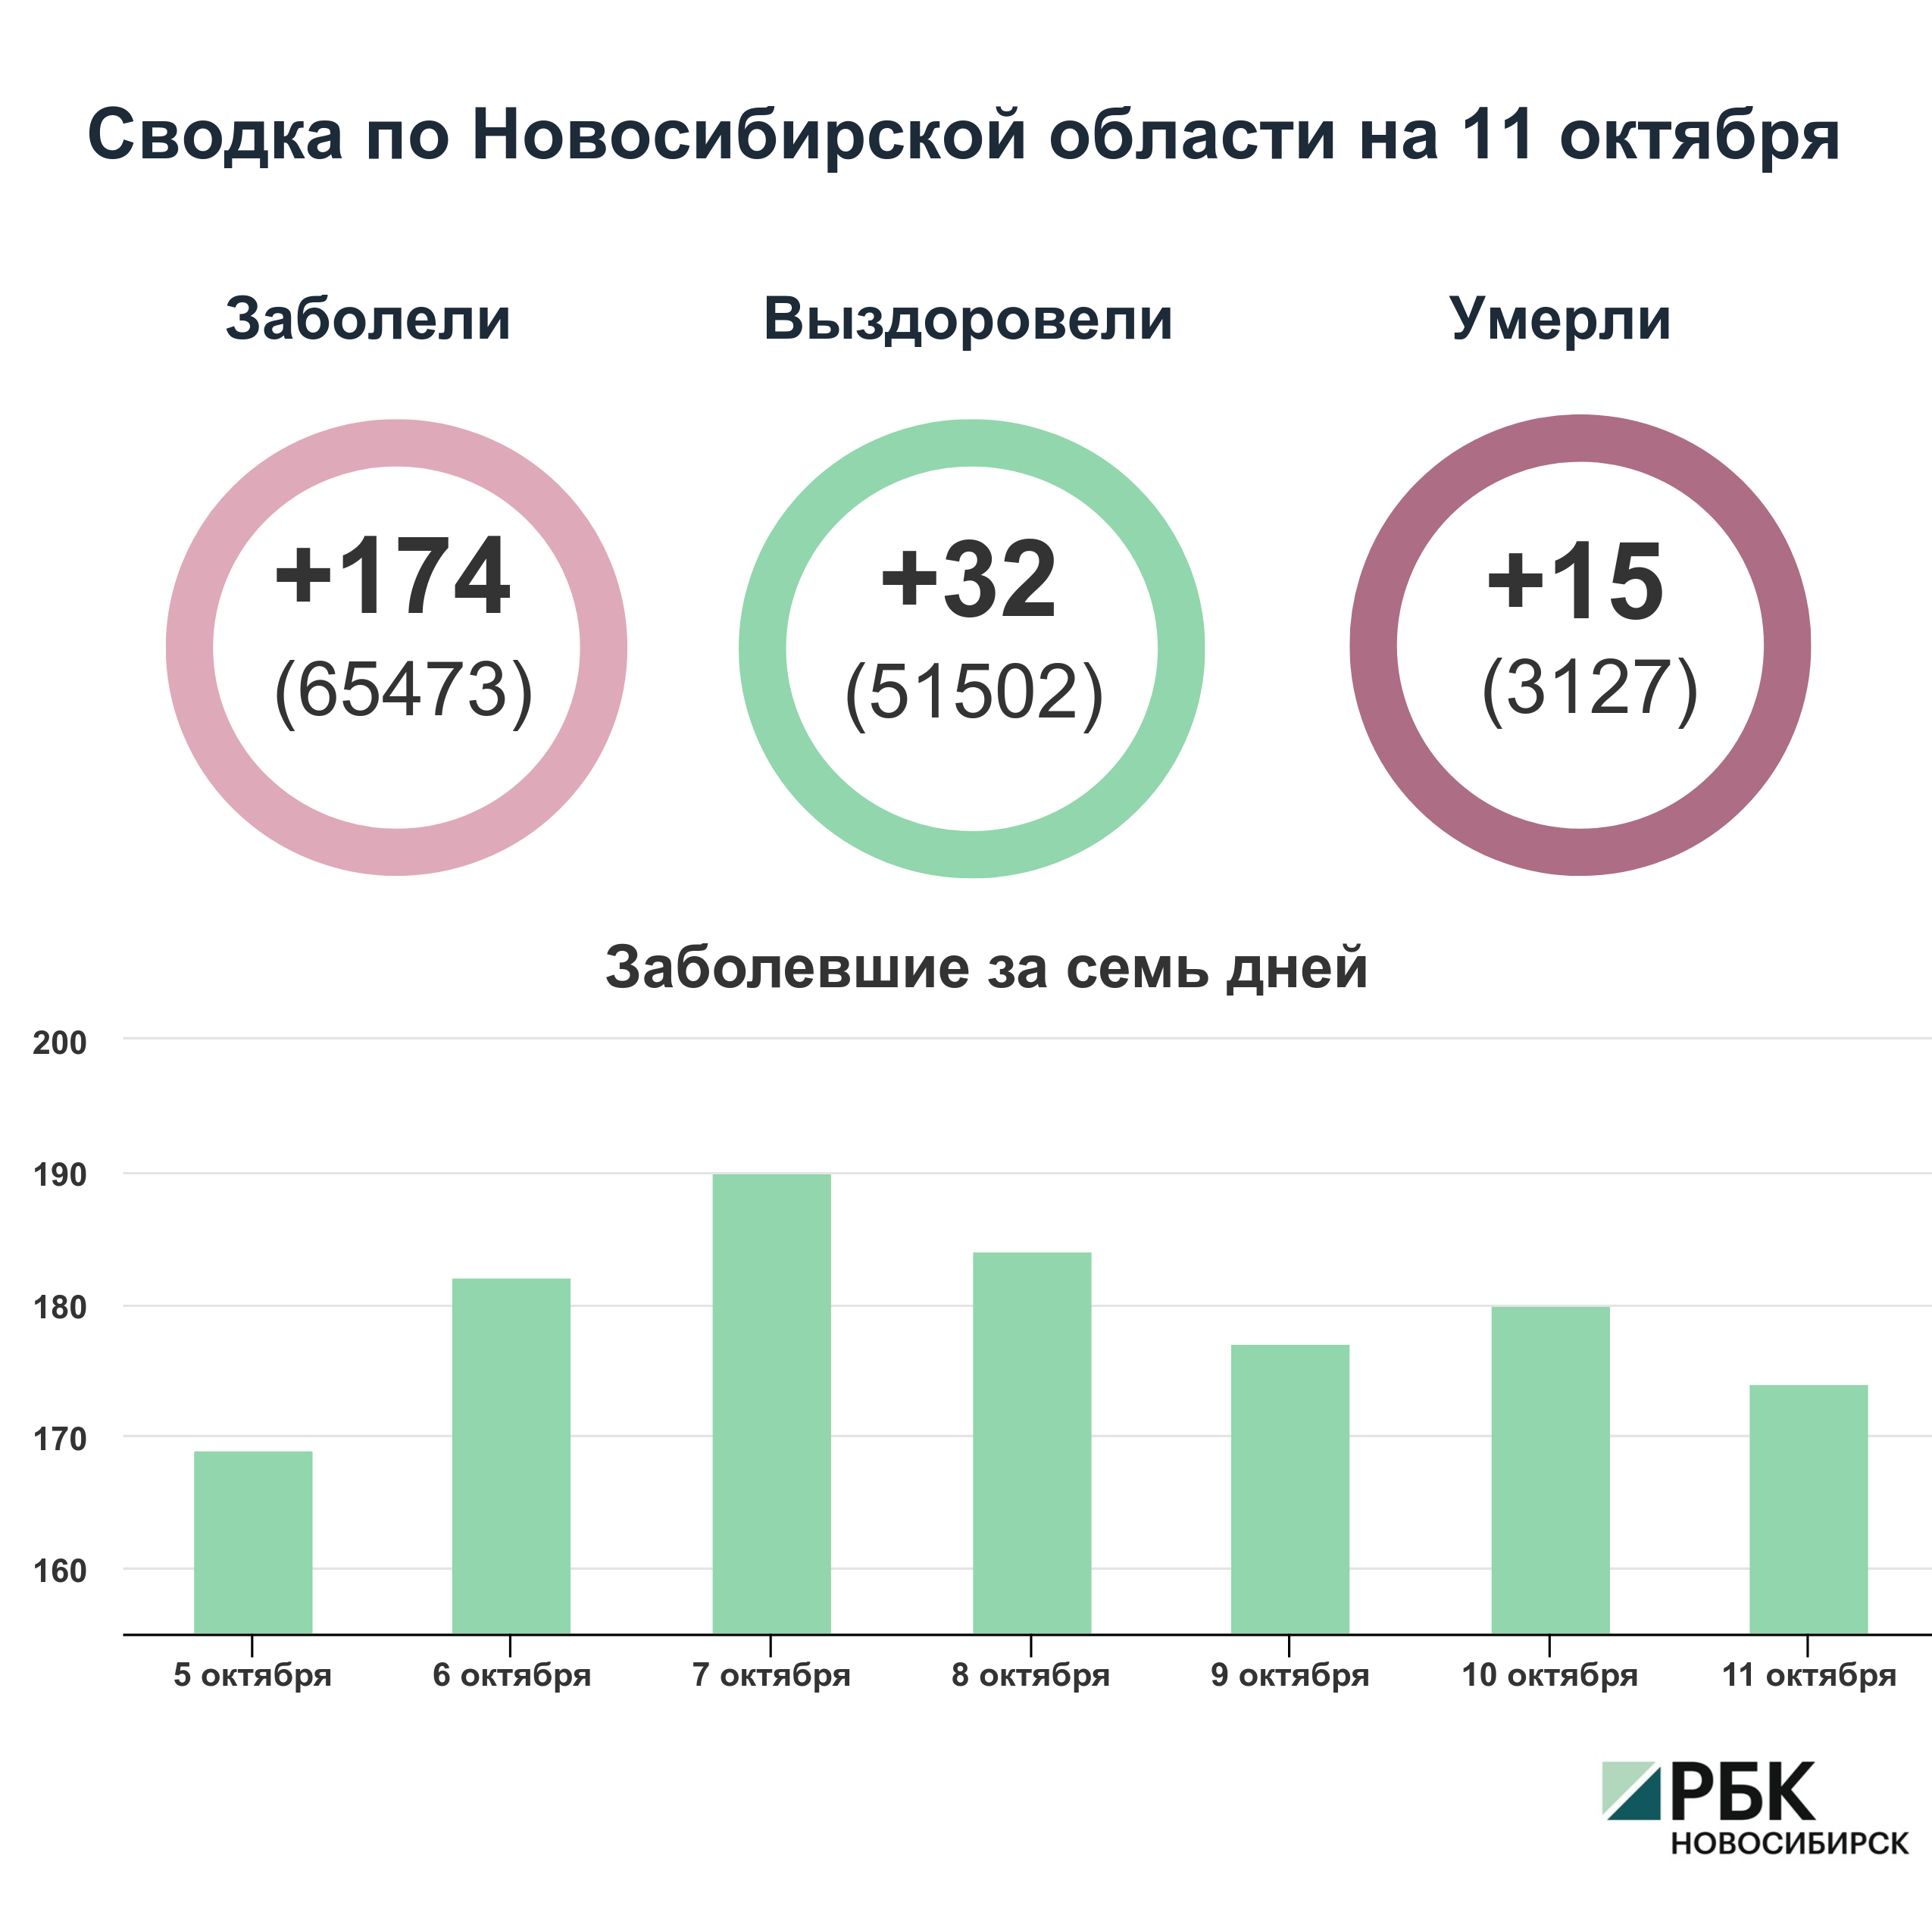 Коронавирус в Новосибирске: сводка на 11 октября